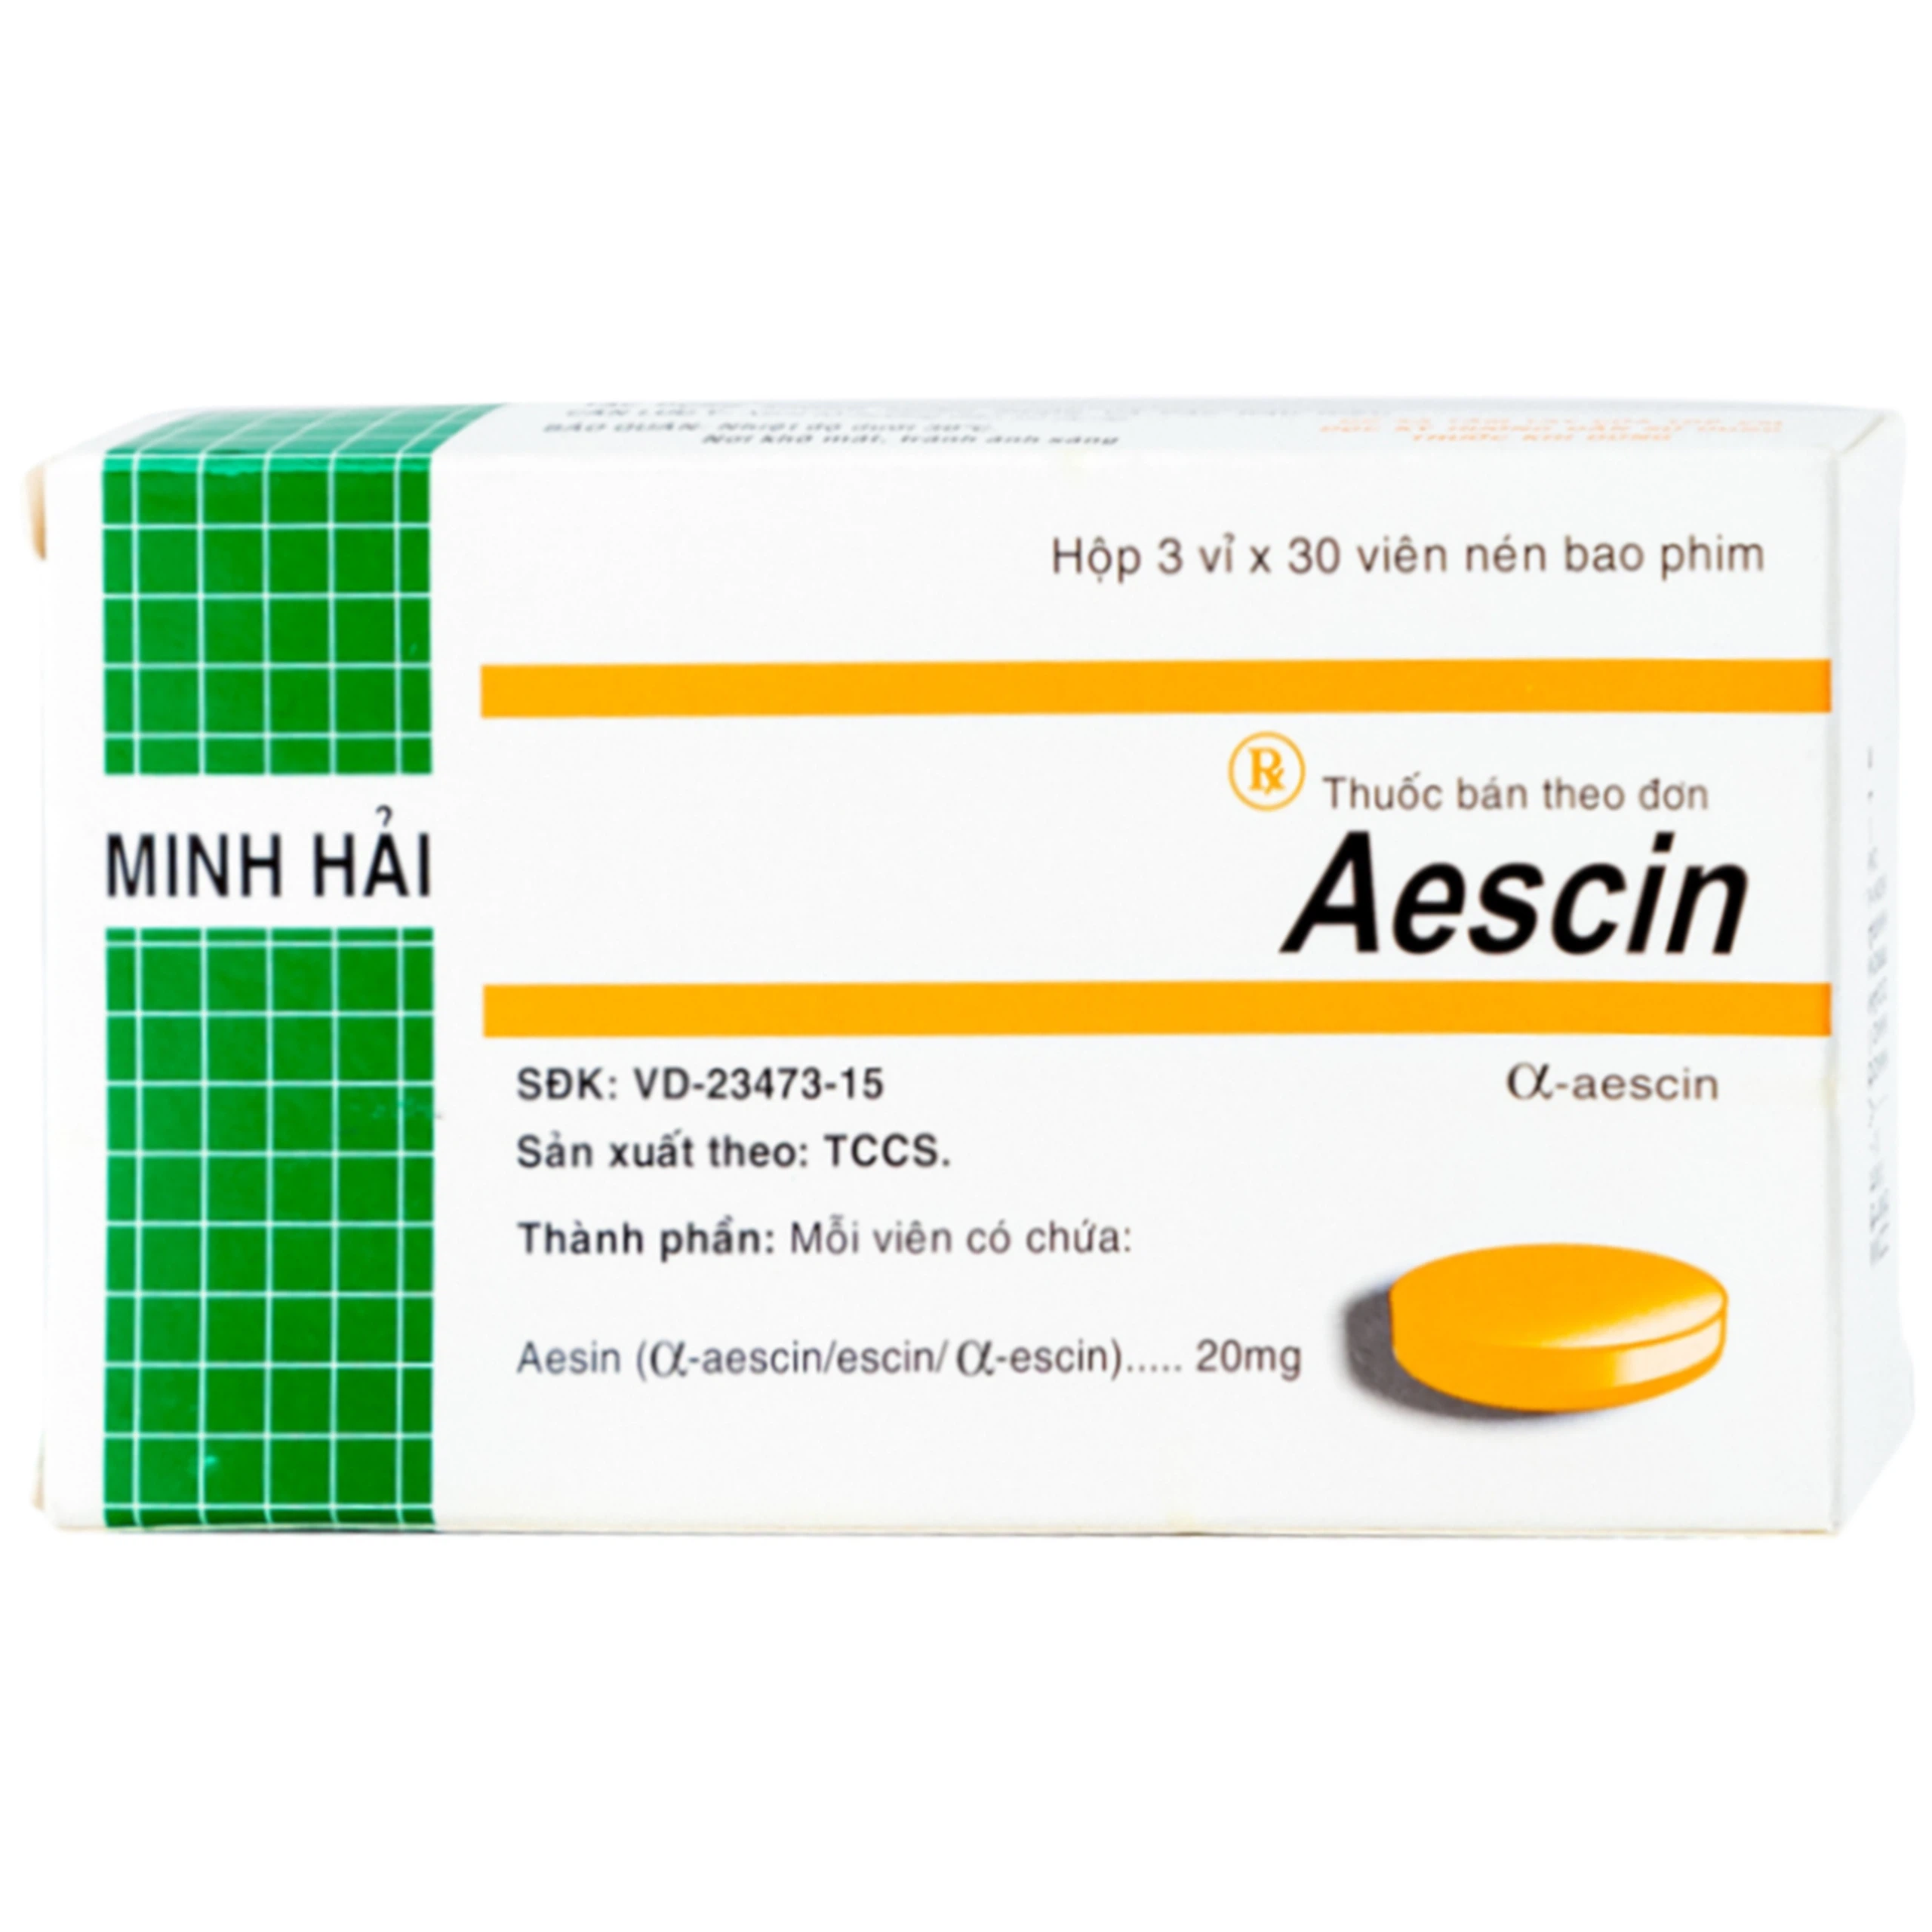 Thuốc Aescin 20mg điều trị thiểu năng tĩnh mạch mãn tính, giãn tĩnh mạch chân, trĩ (3 vỉ x 30 viên)